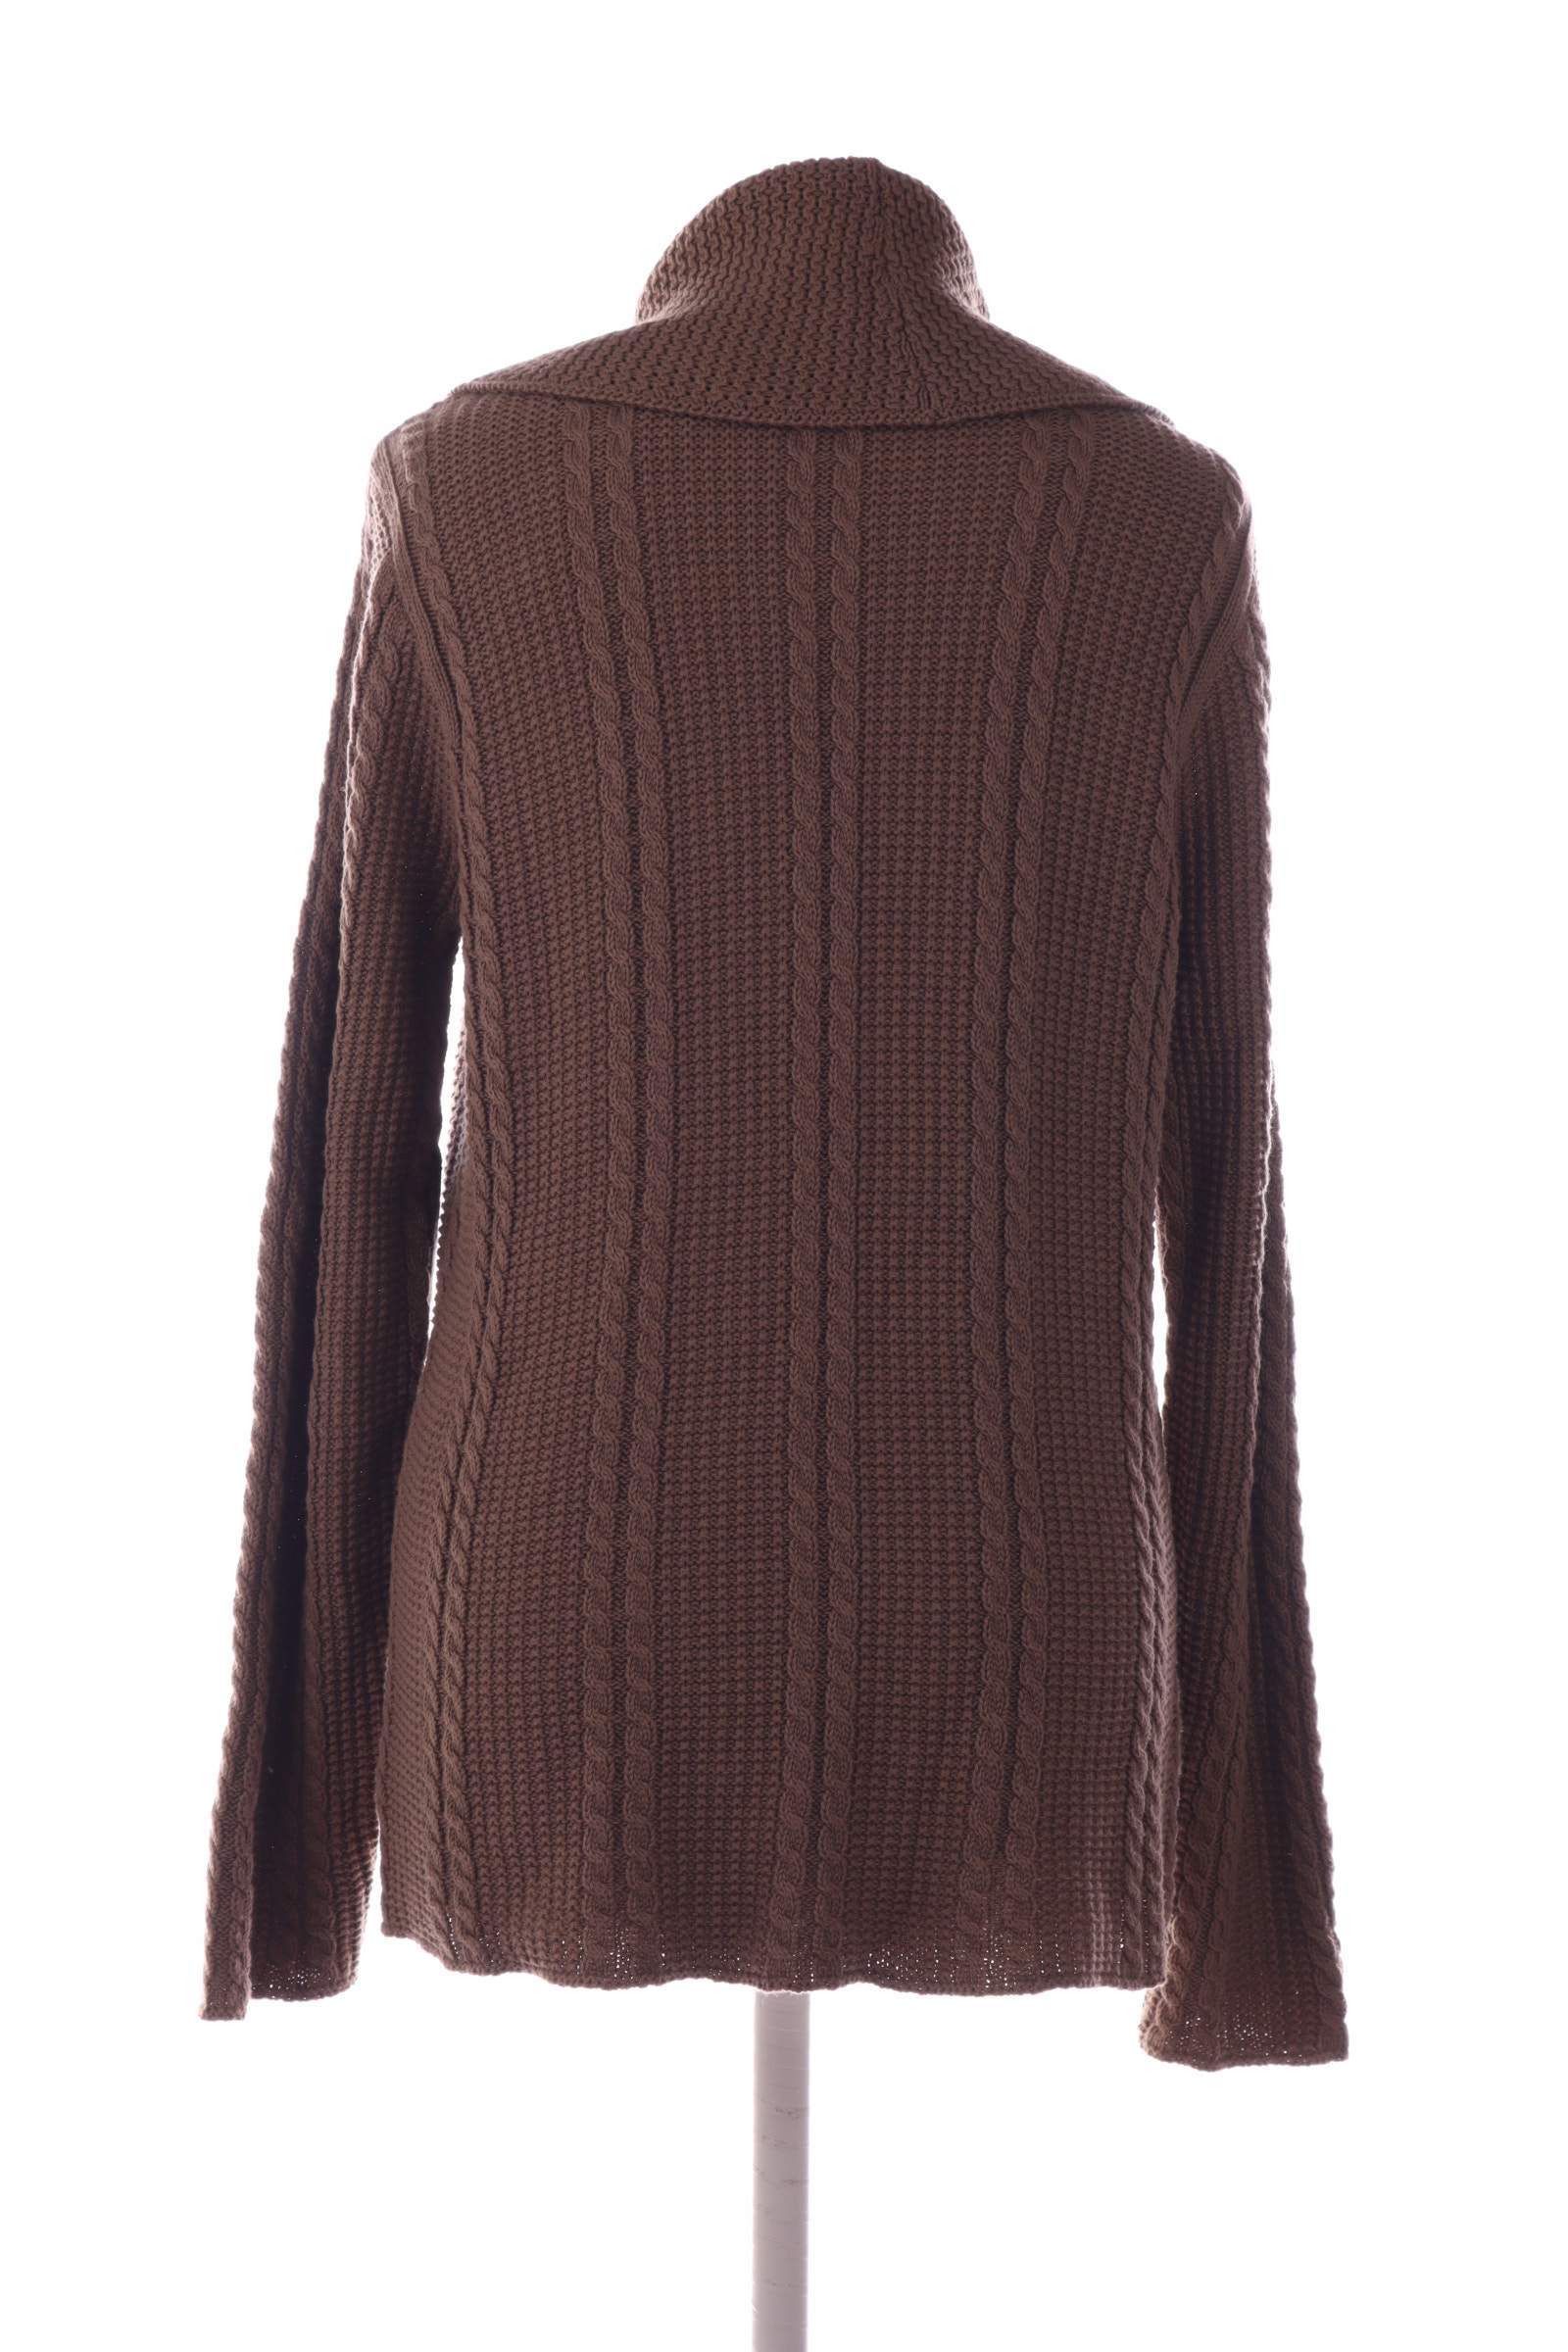 Jeanne Pierre Brown Sweater - upty.store